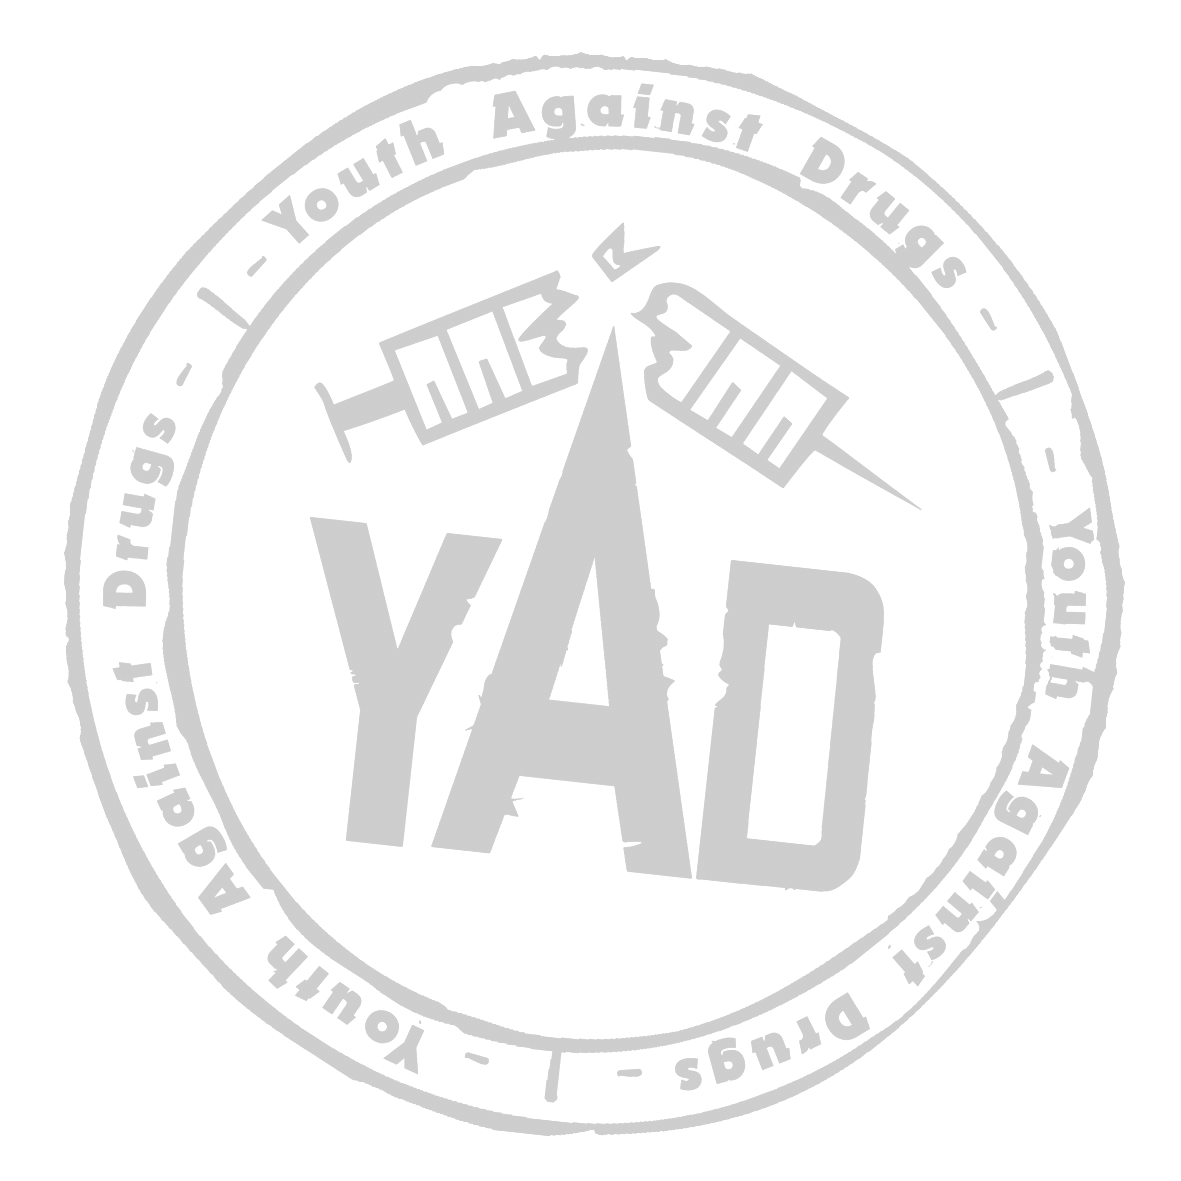 YAD Youth Against Drugs ry TOIMINTASUUNNITELMA 2015 2015 YAD Youth Against Drugs ry / Keskustoimisto Lutakonaukio 3 40100 Jyväskylä